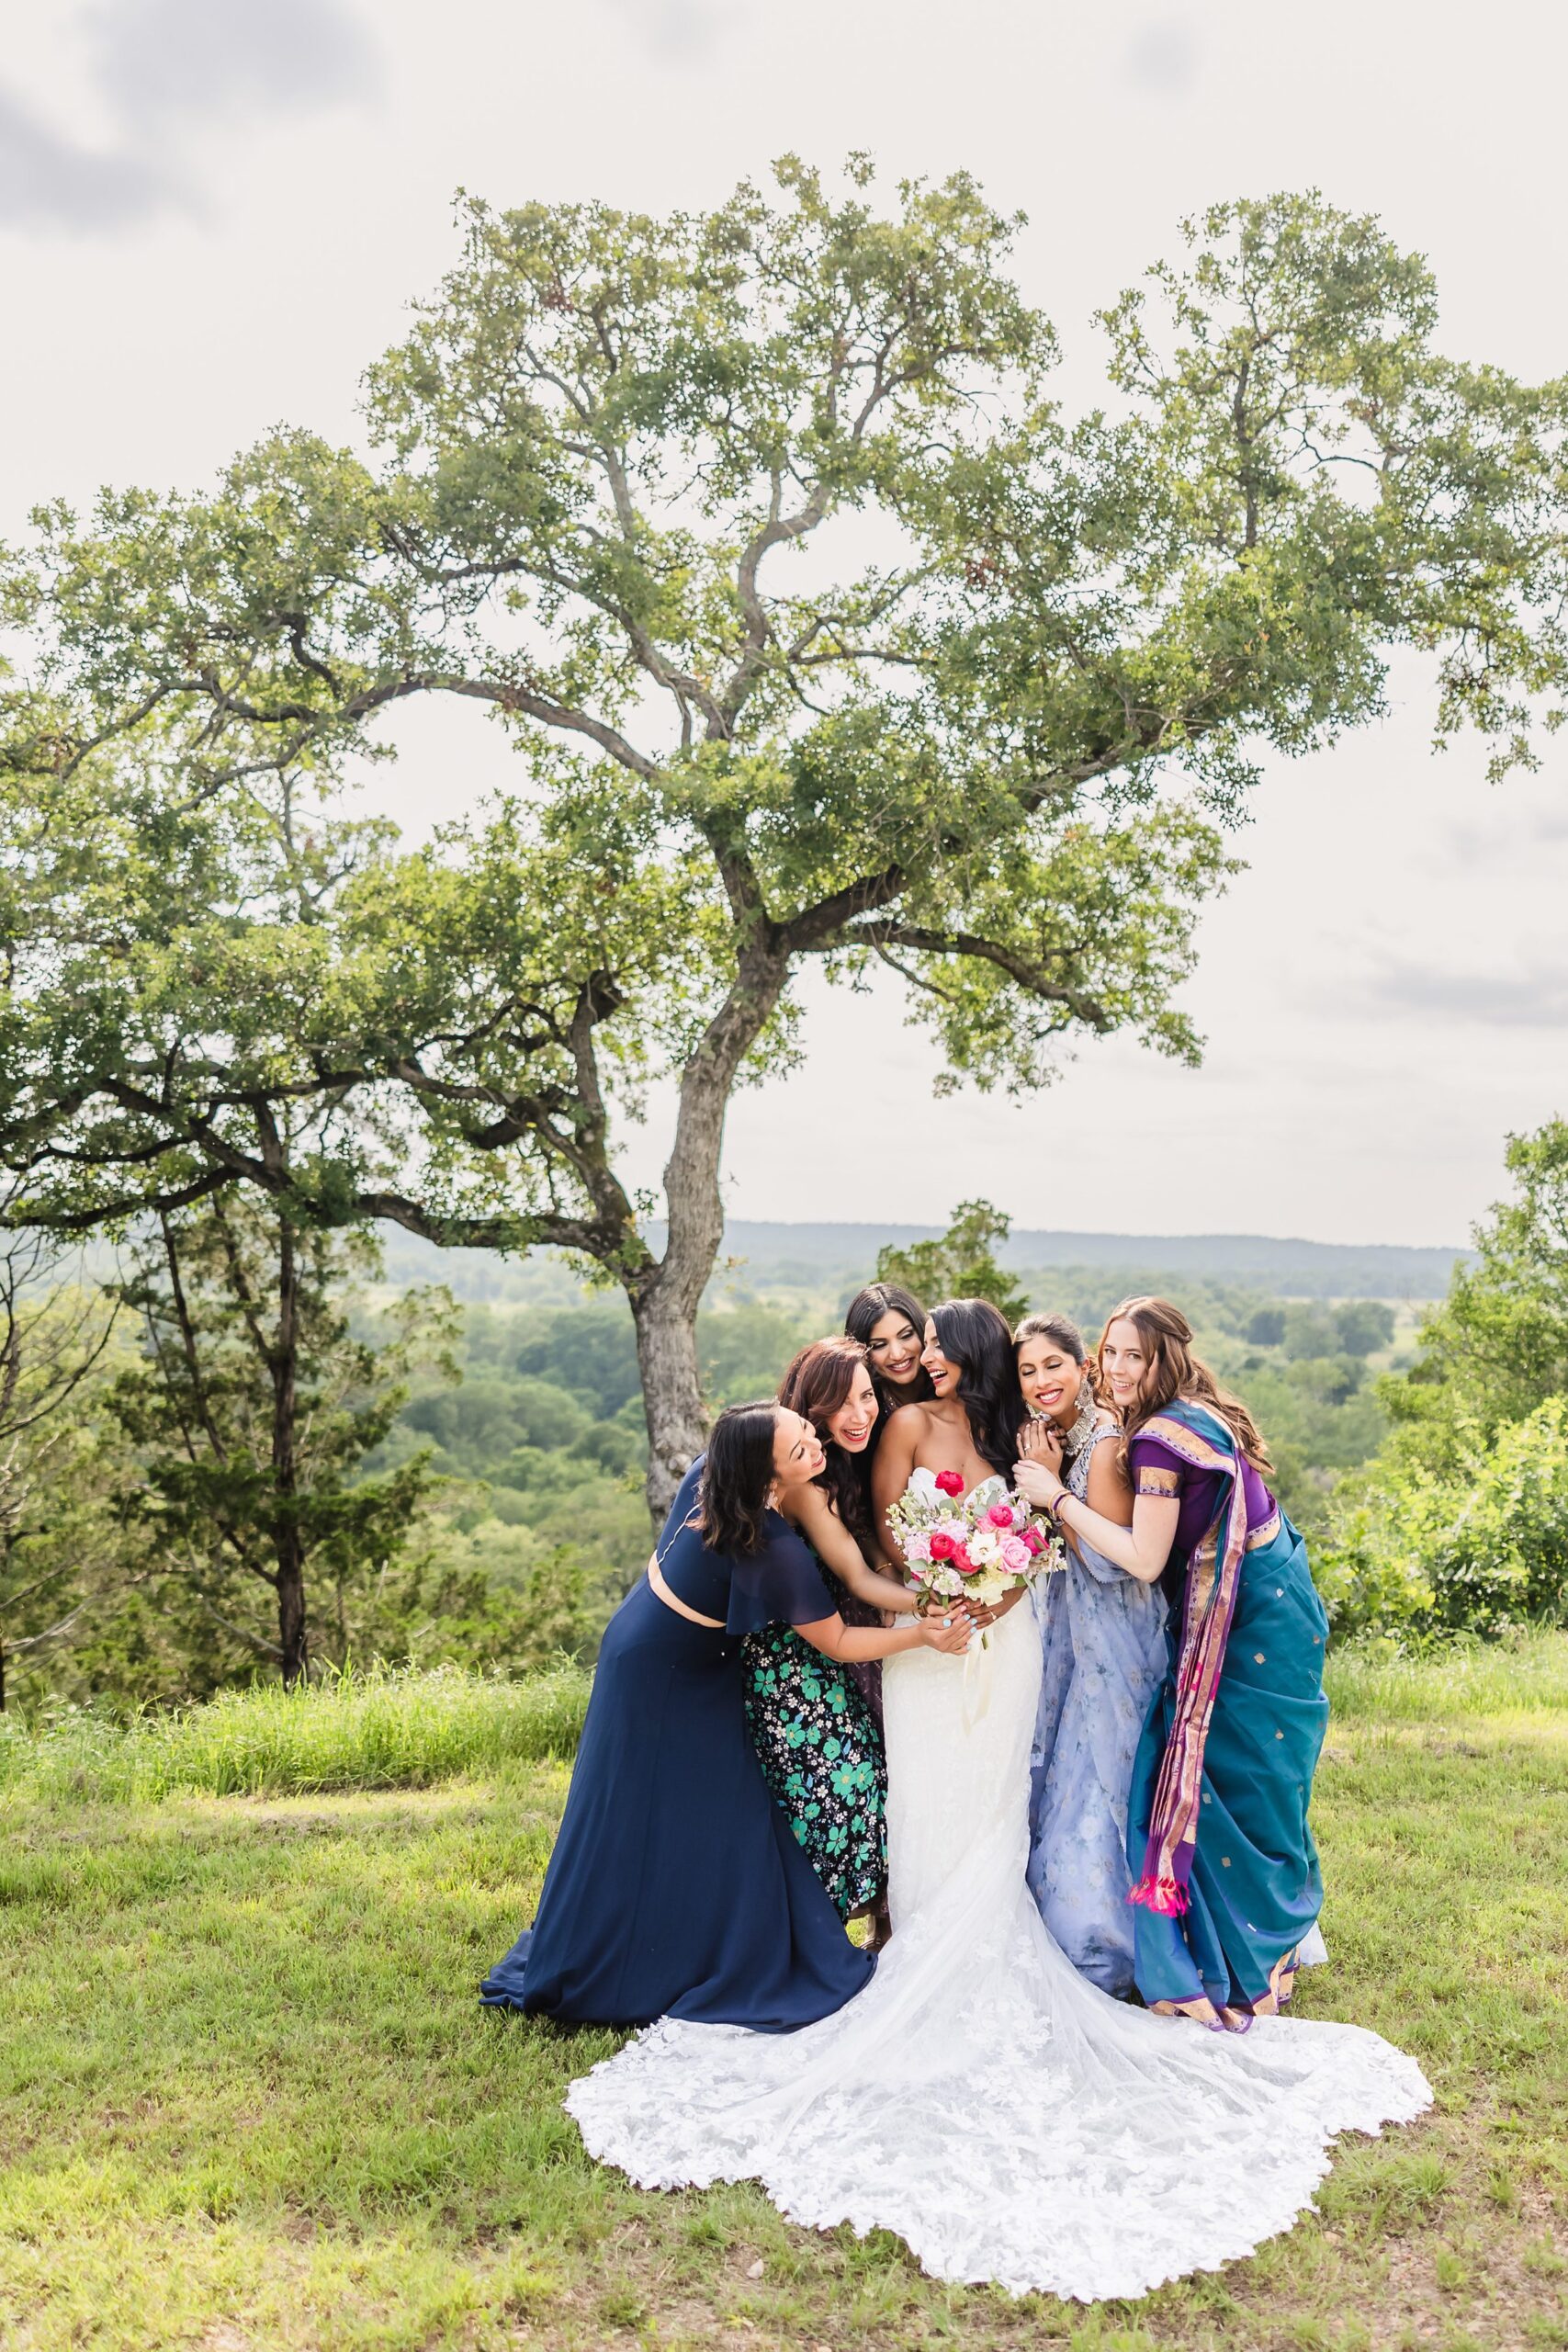 Bride and her bridesmaids during a wedding at Shiraz Garden in Bastrop, Texas.